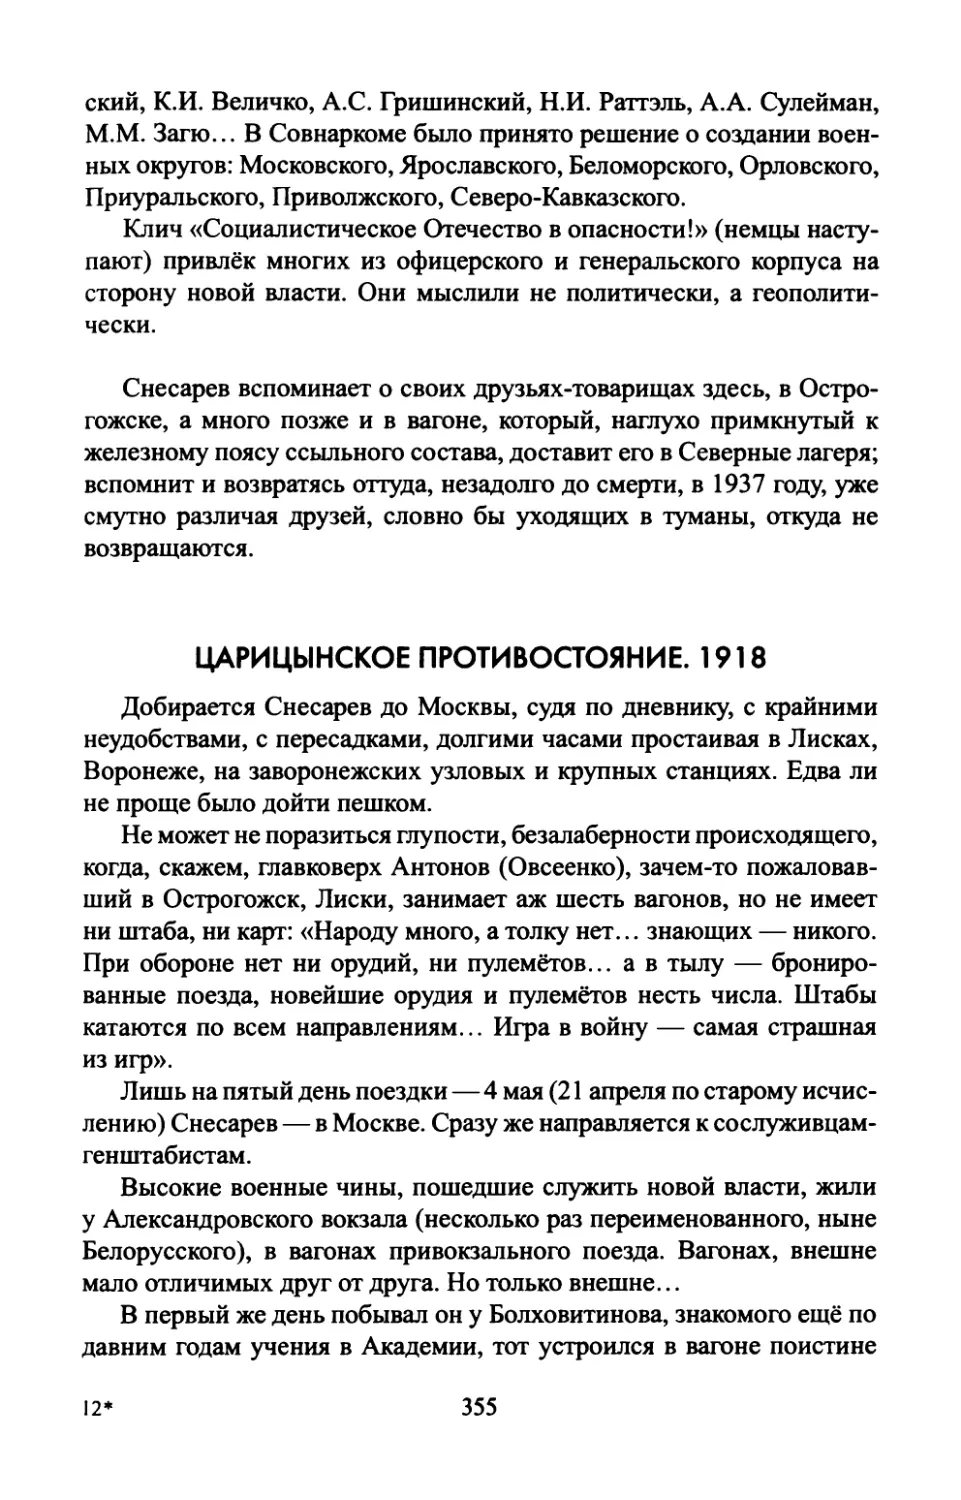 ЦАРИЦЫНСКОЕ  ПРОТИВОСТОЯНИЕ.  1918